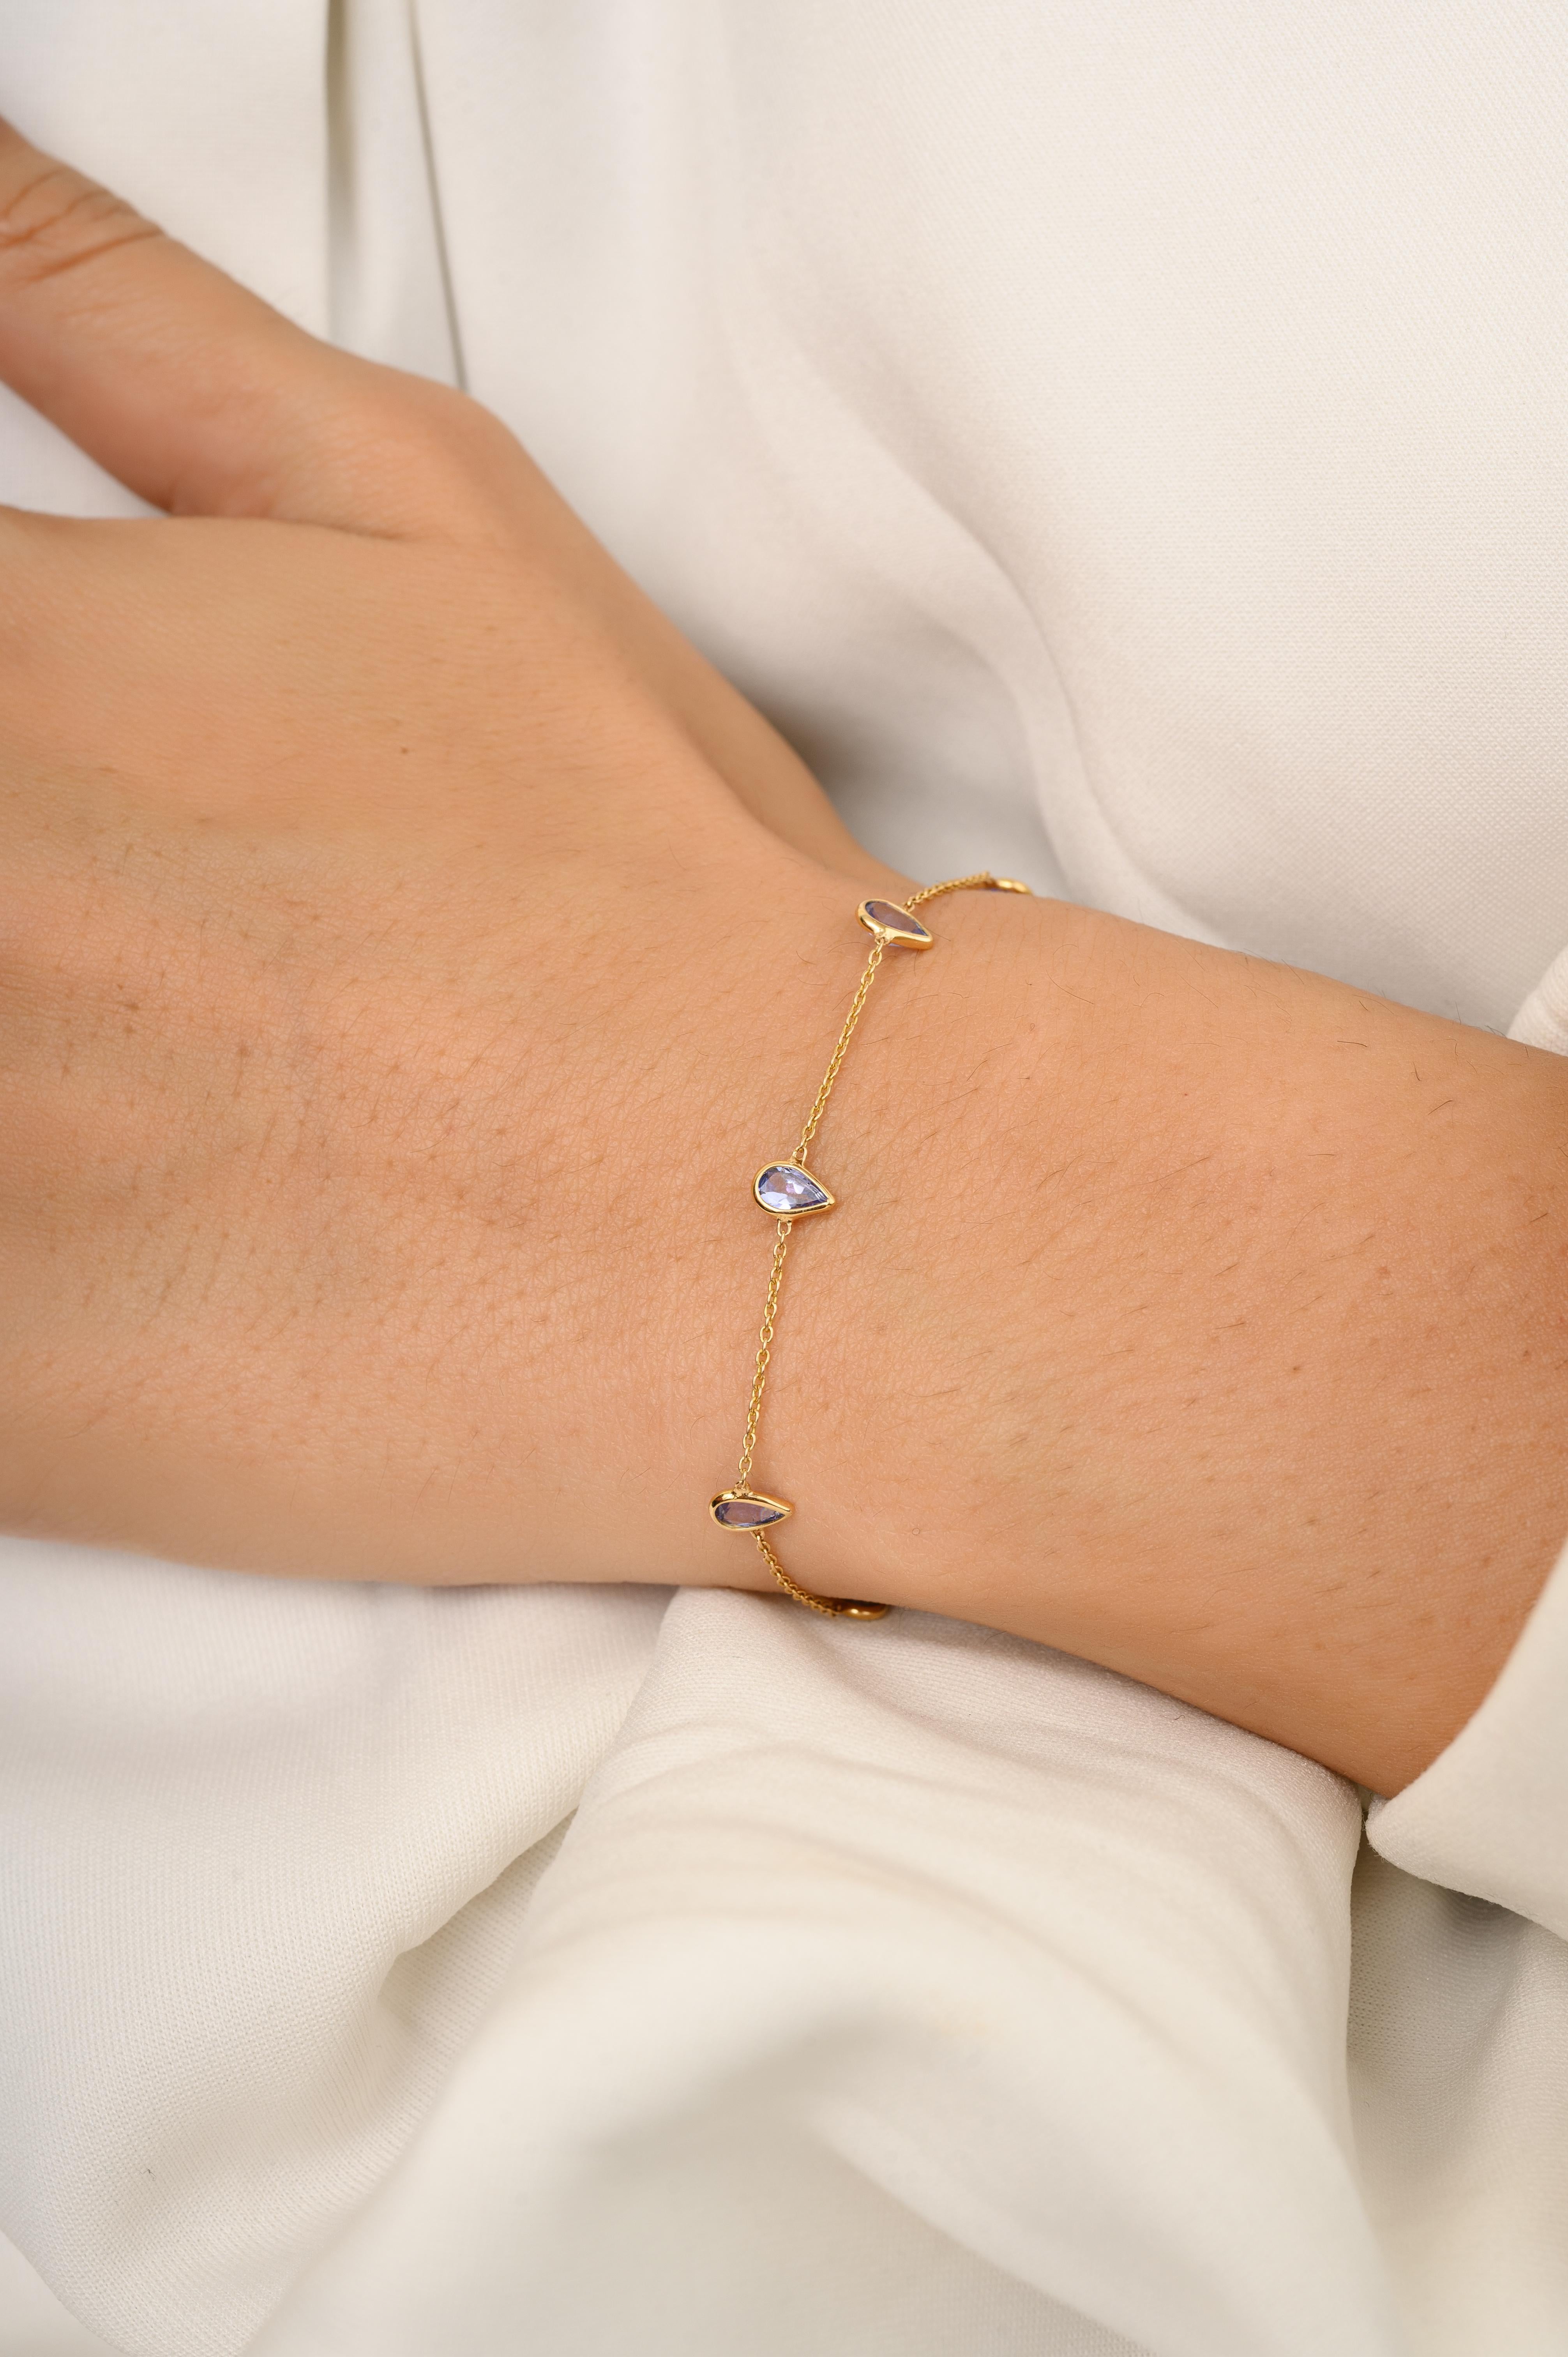 Ce bracelet de pierres précieuses Tanzanite fait main en or 18 carats présente 1,56 carats de tanzanite naturelle étincelante à l'infini. Il mesure 7 pouces de long. 
La tanzanite apporte énergie, calme et bonheur dans la vie.
Conçue avec une